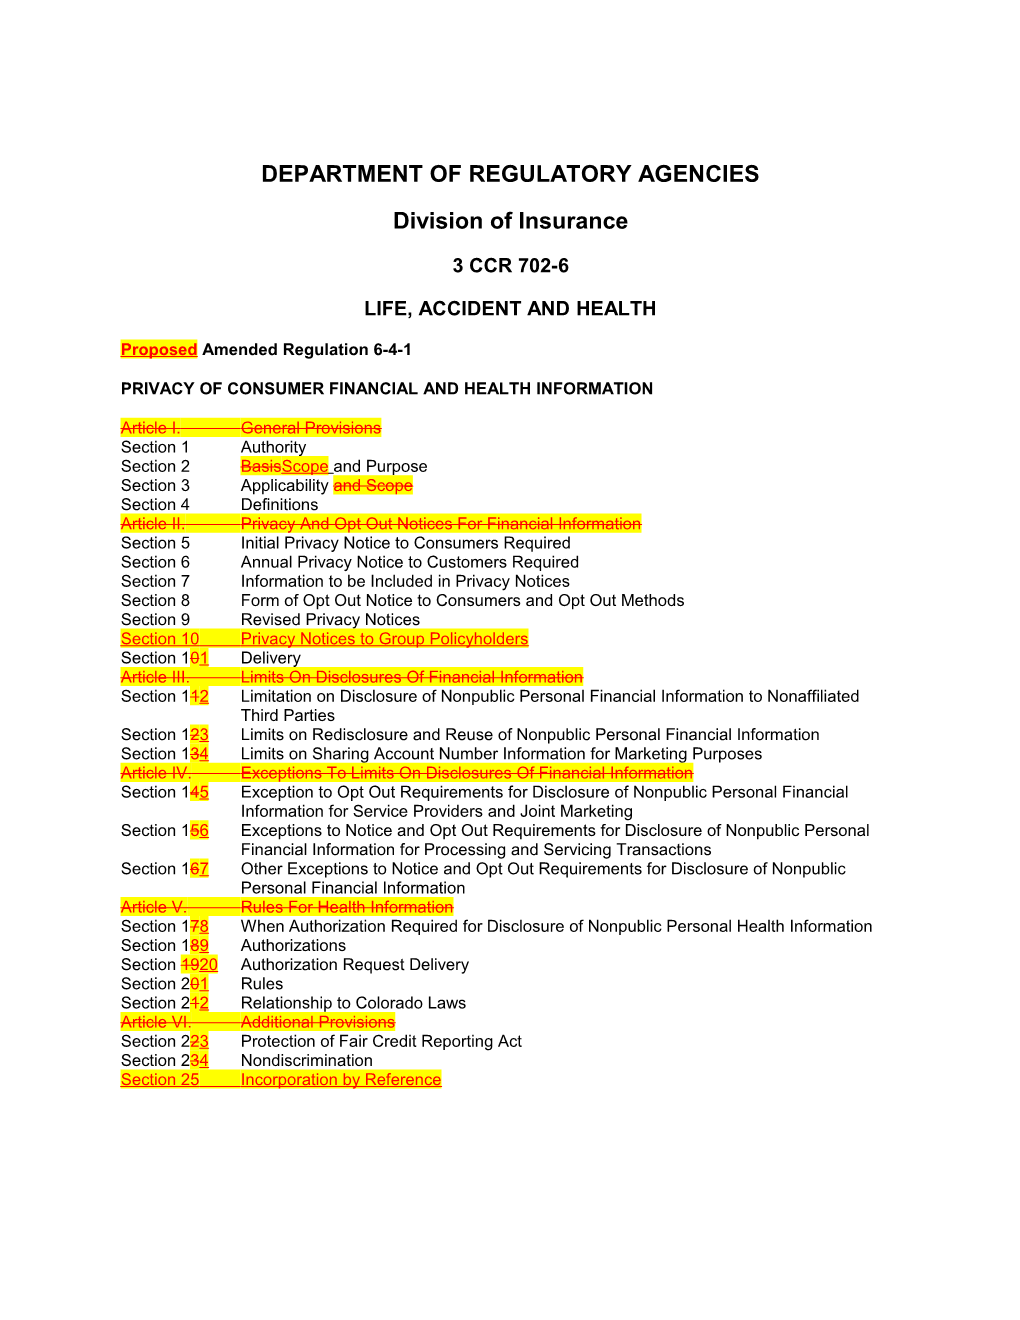 Department of Regulatory Agencies s24